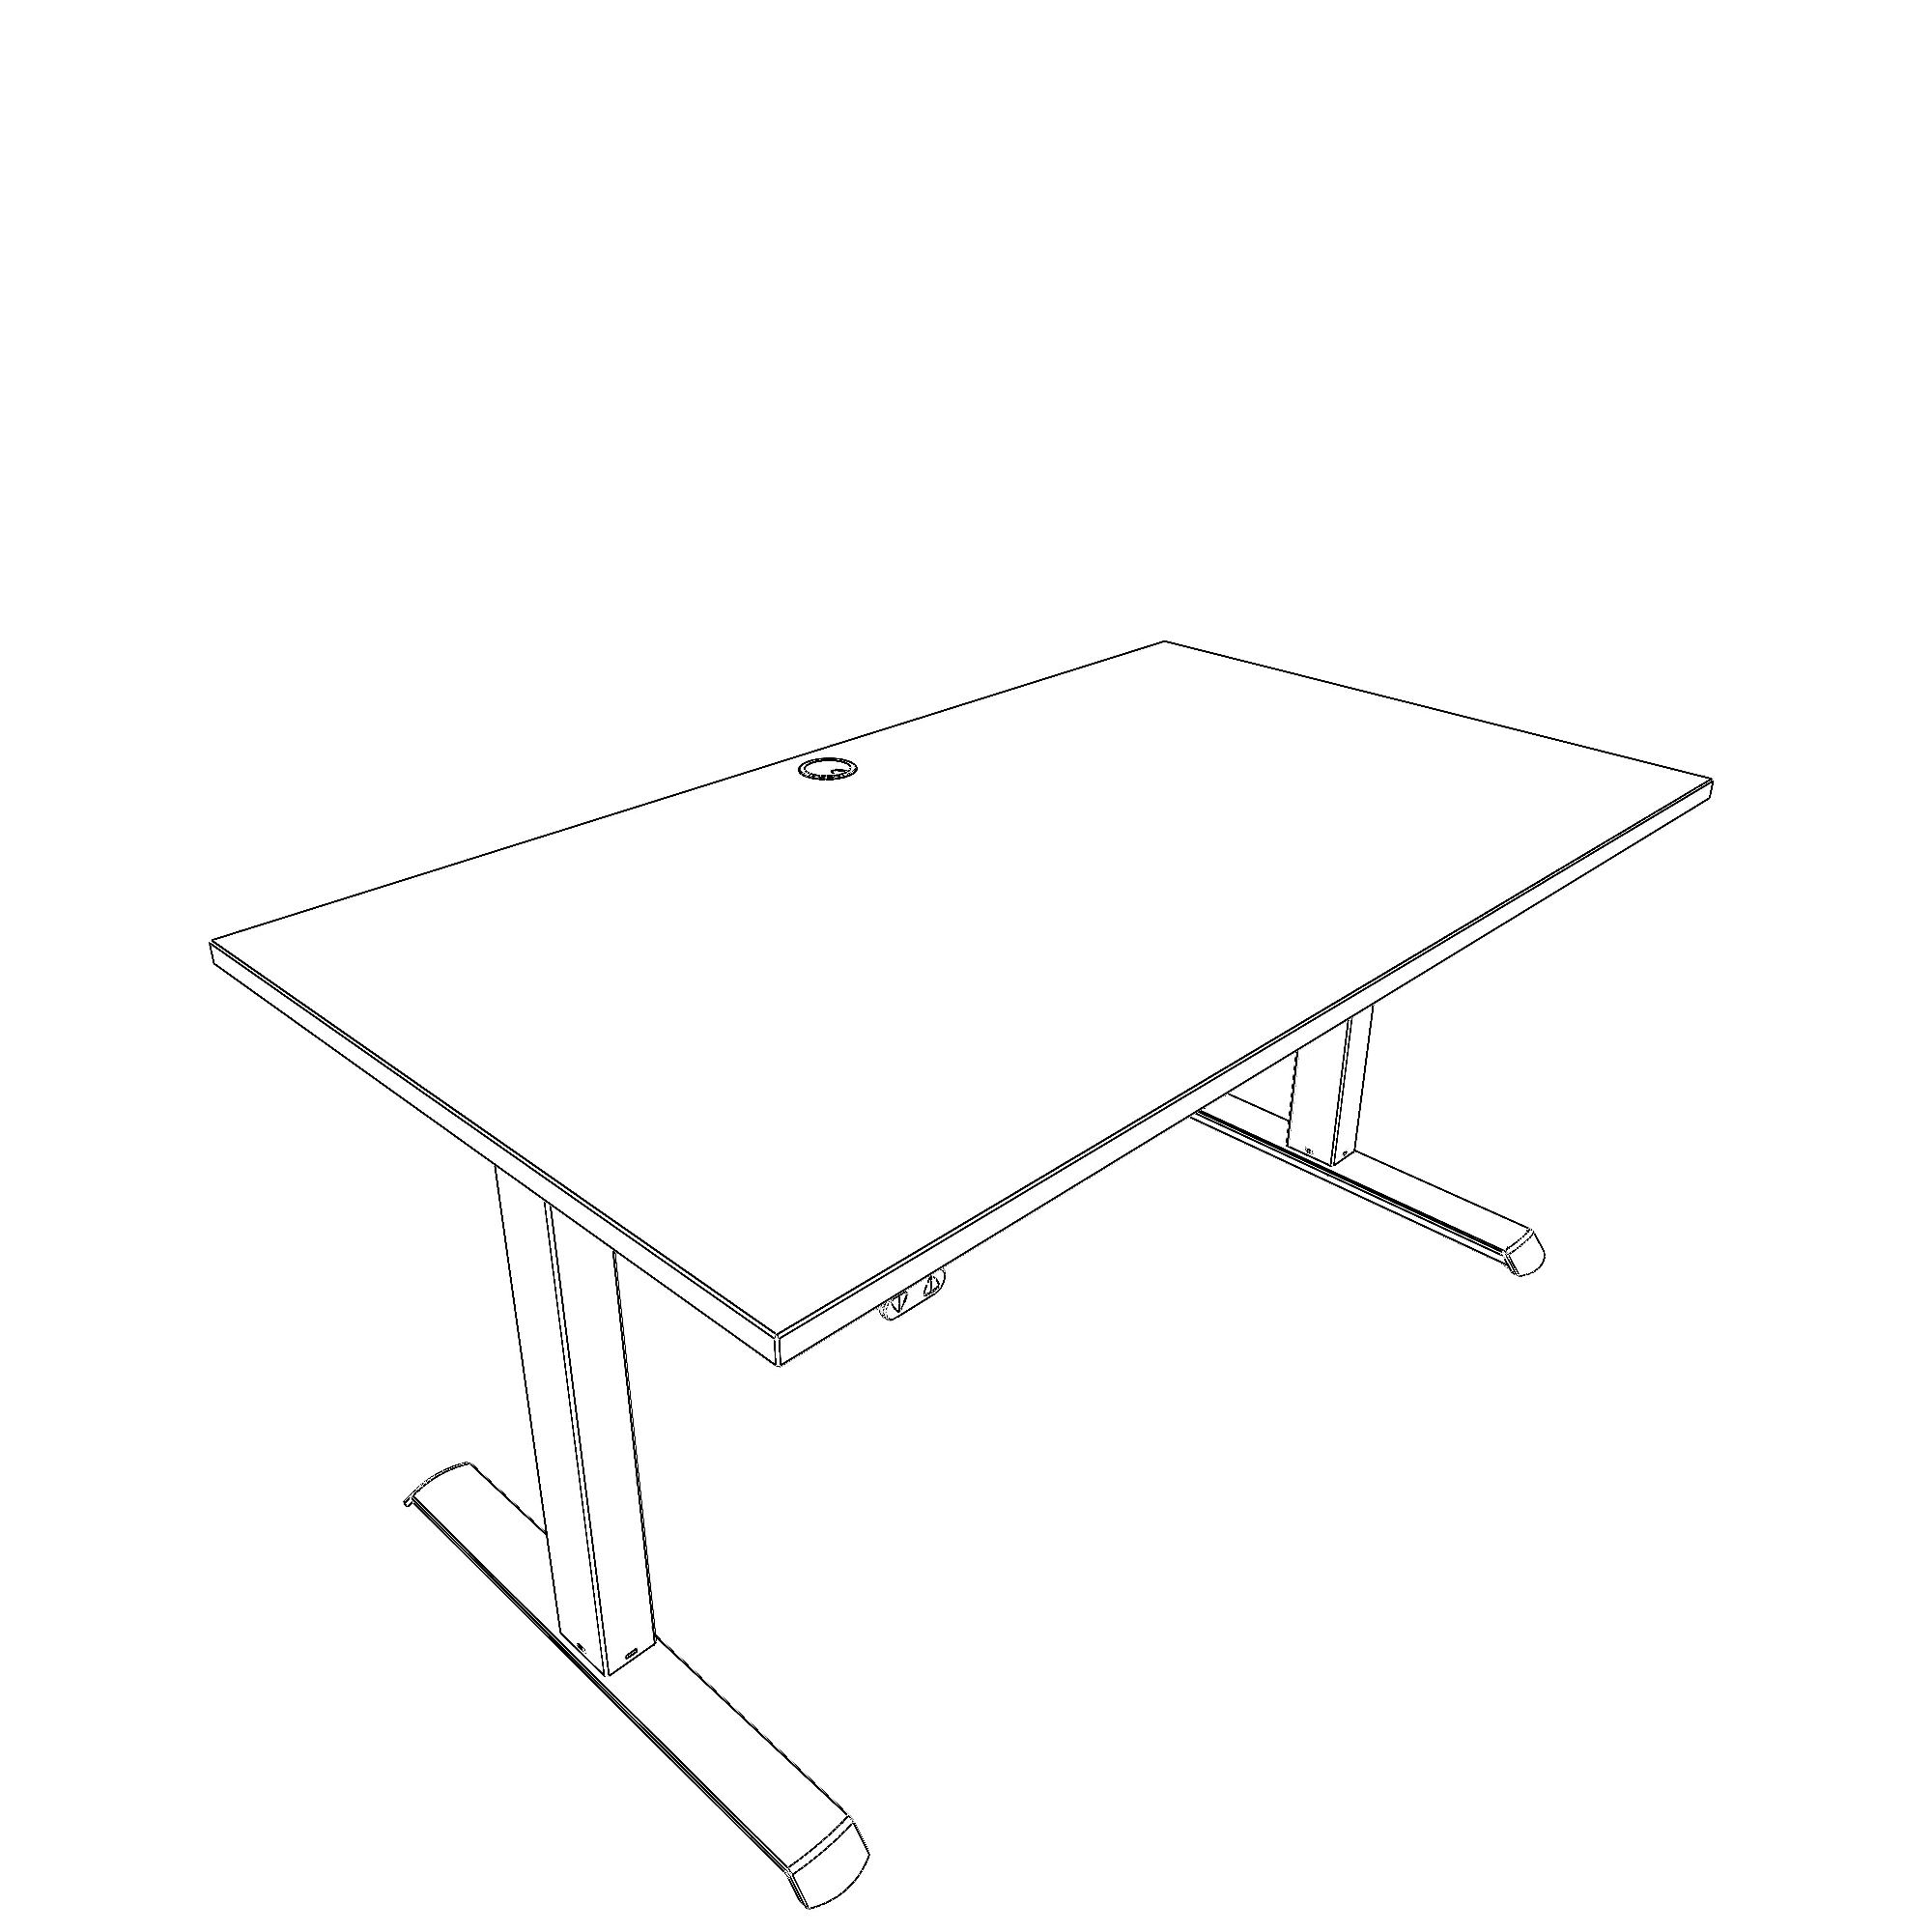 Elektrisch verstelbaar bureau | 140x80 cm | Wit met zwart frame